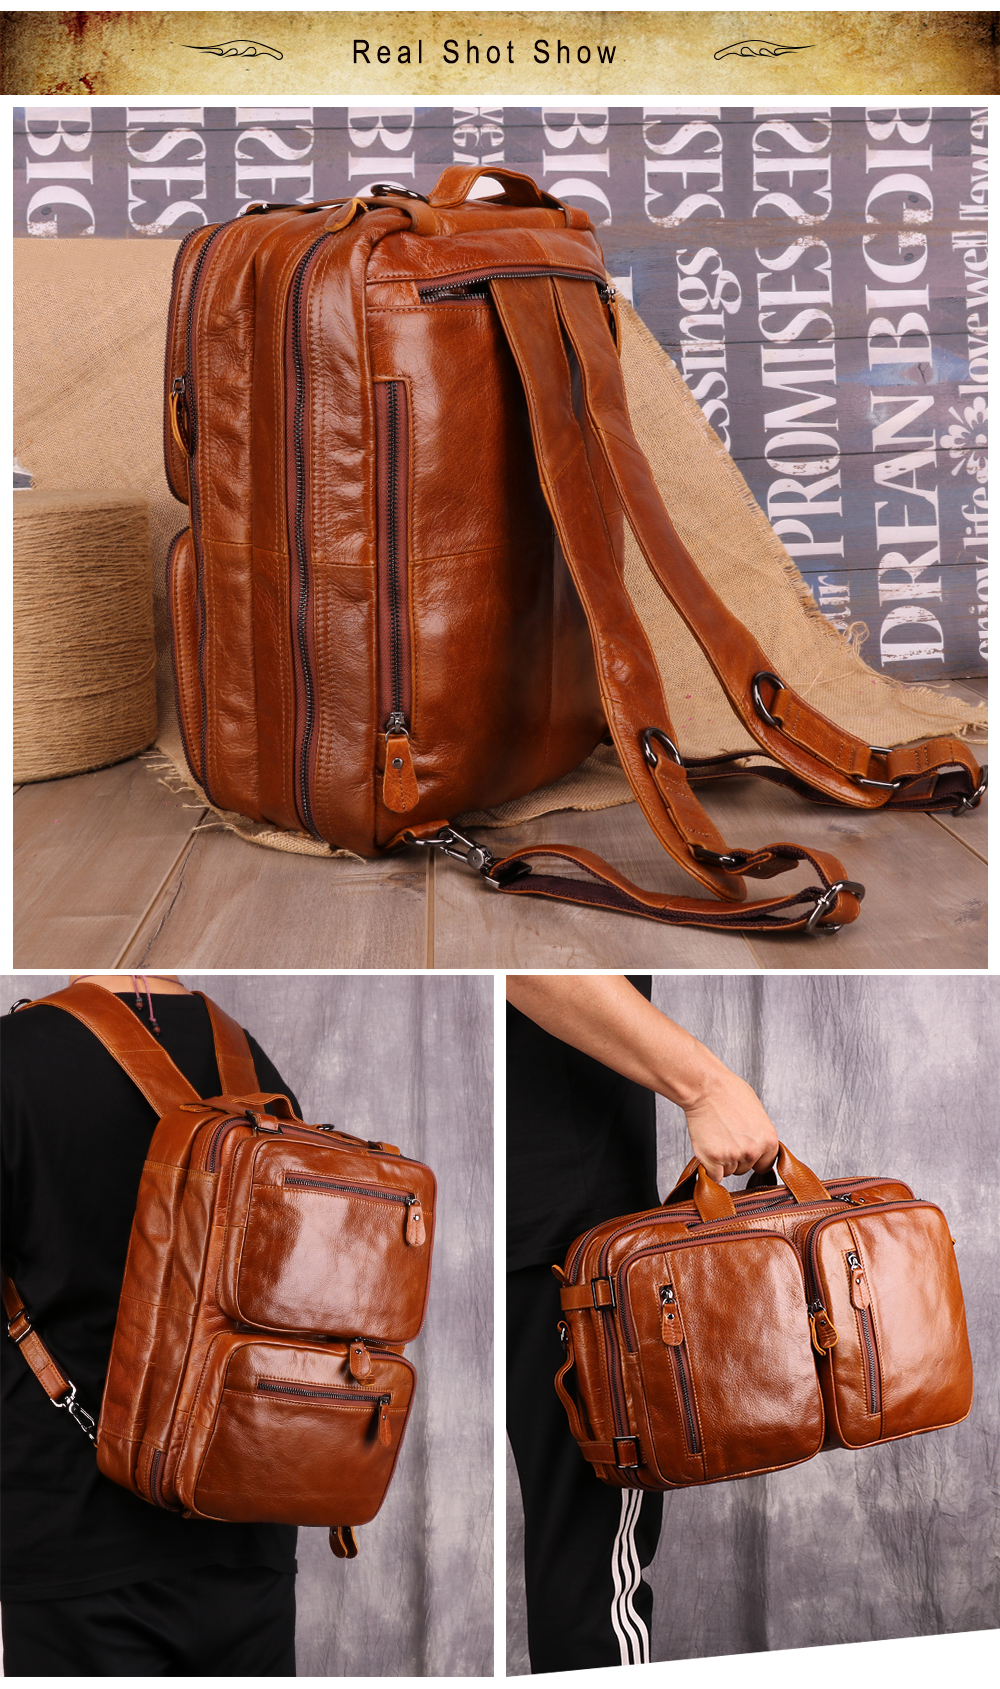 genuine-leather-vintage-men-travel-bag-duffel-bag-men-s-handbag-luggage-travel-bag-large-capacity-leather-shoulder-tote-03.jpg